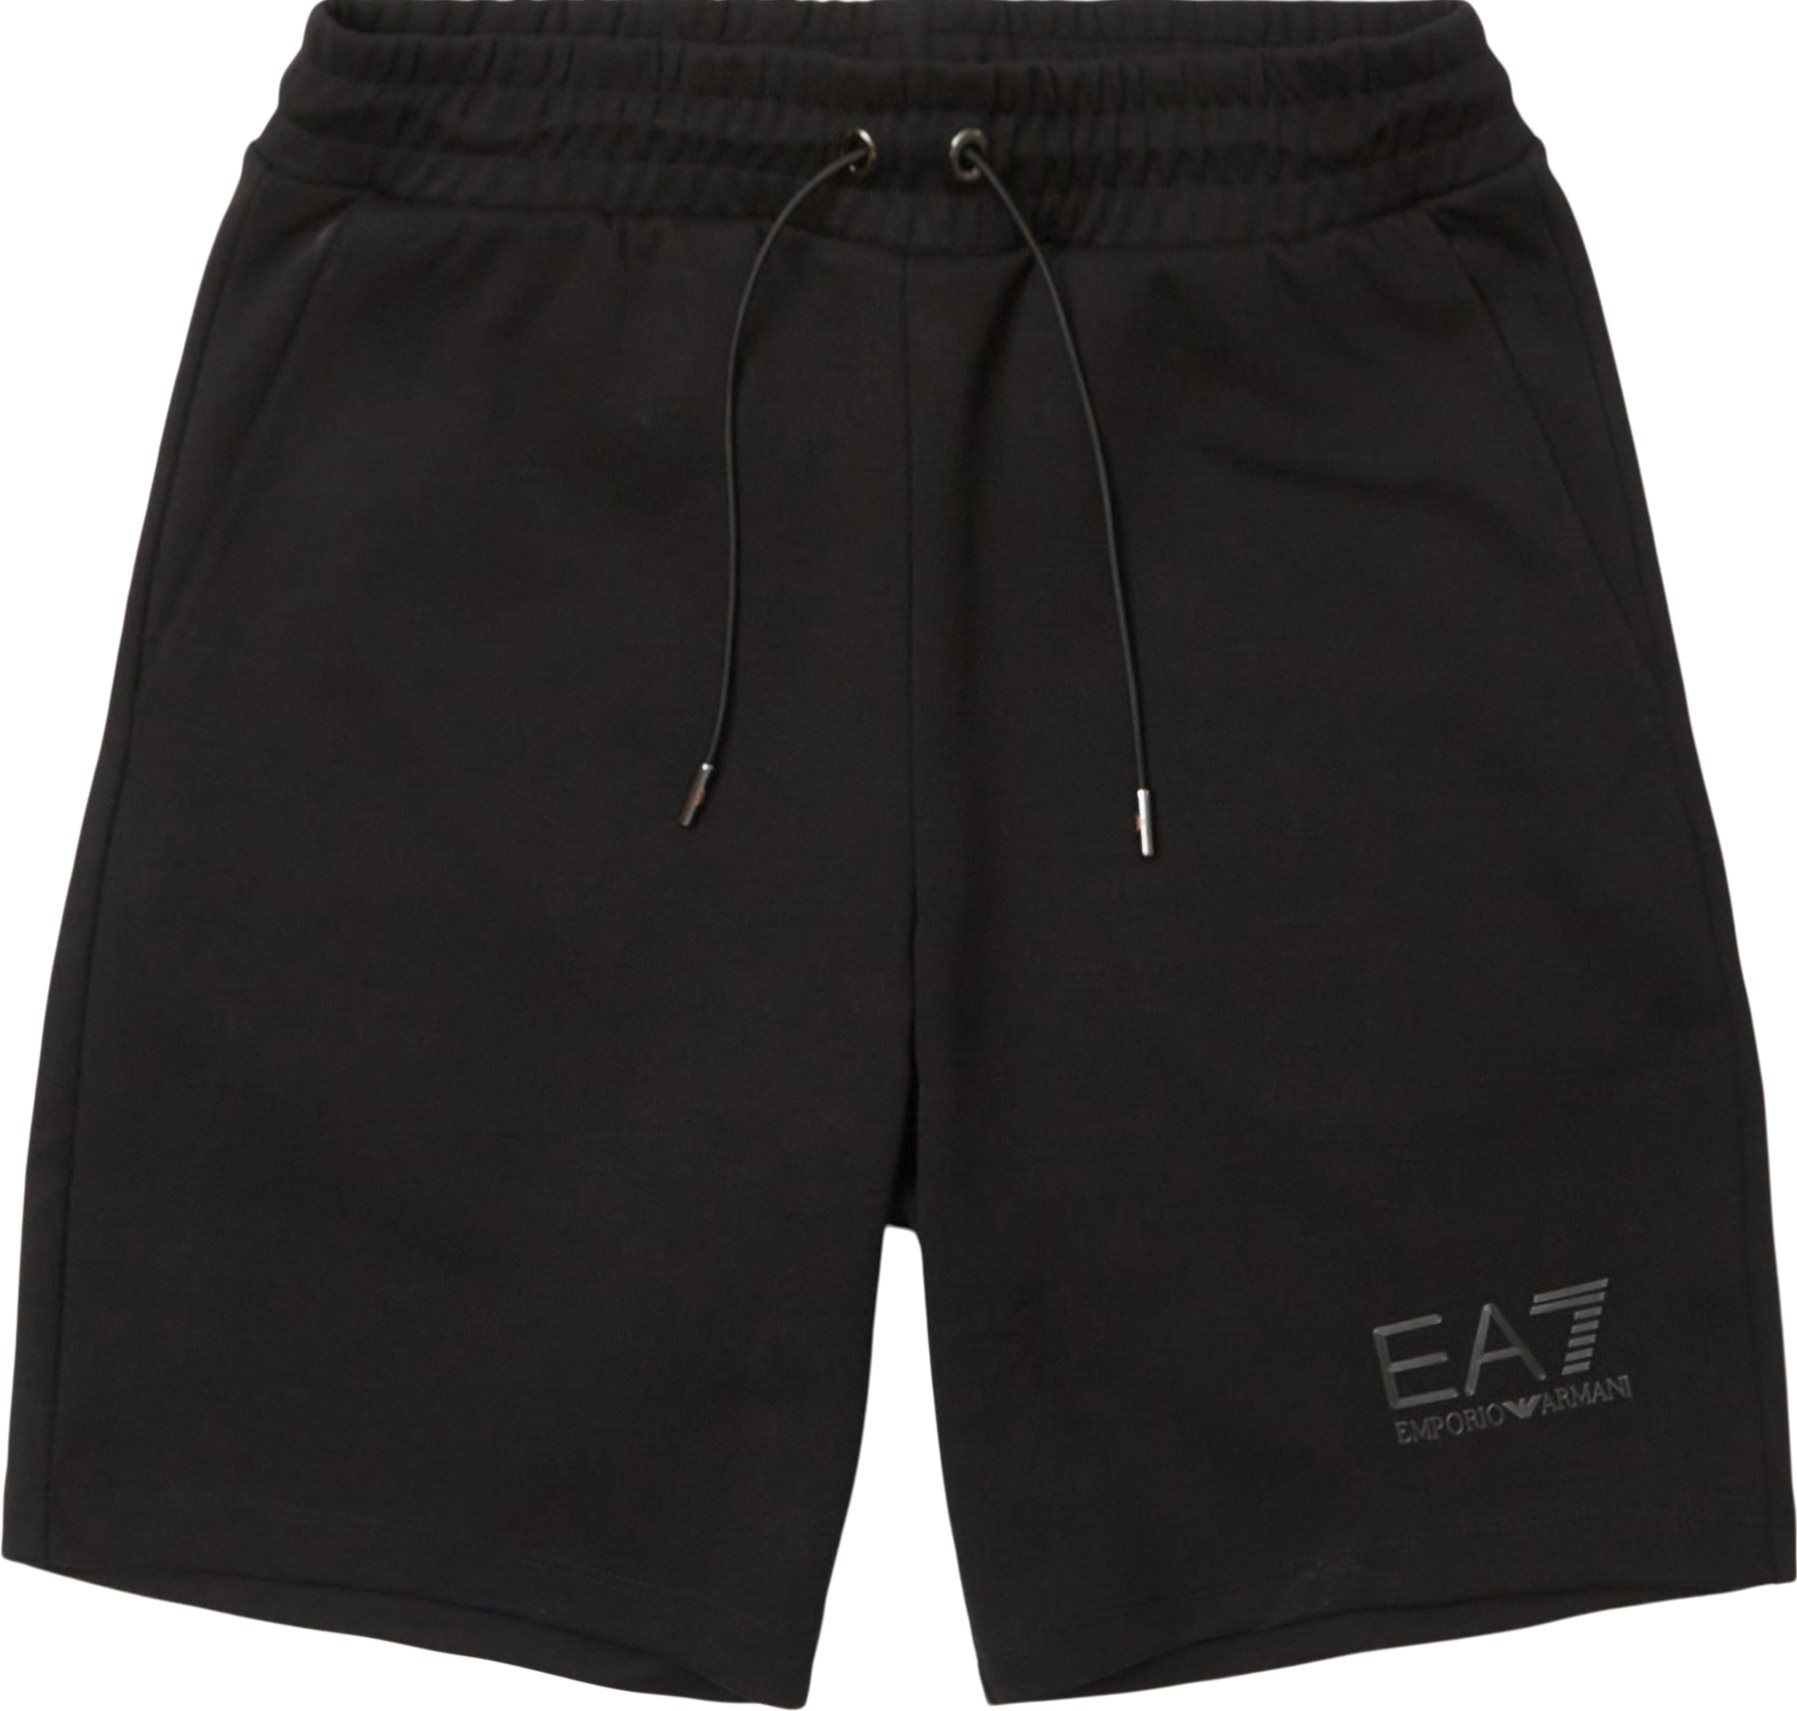 PJARZ-3LPS75 Shorts  - Shorts - Regular fit - Svart